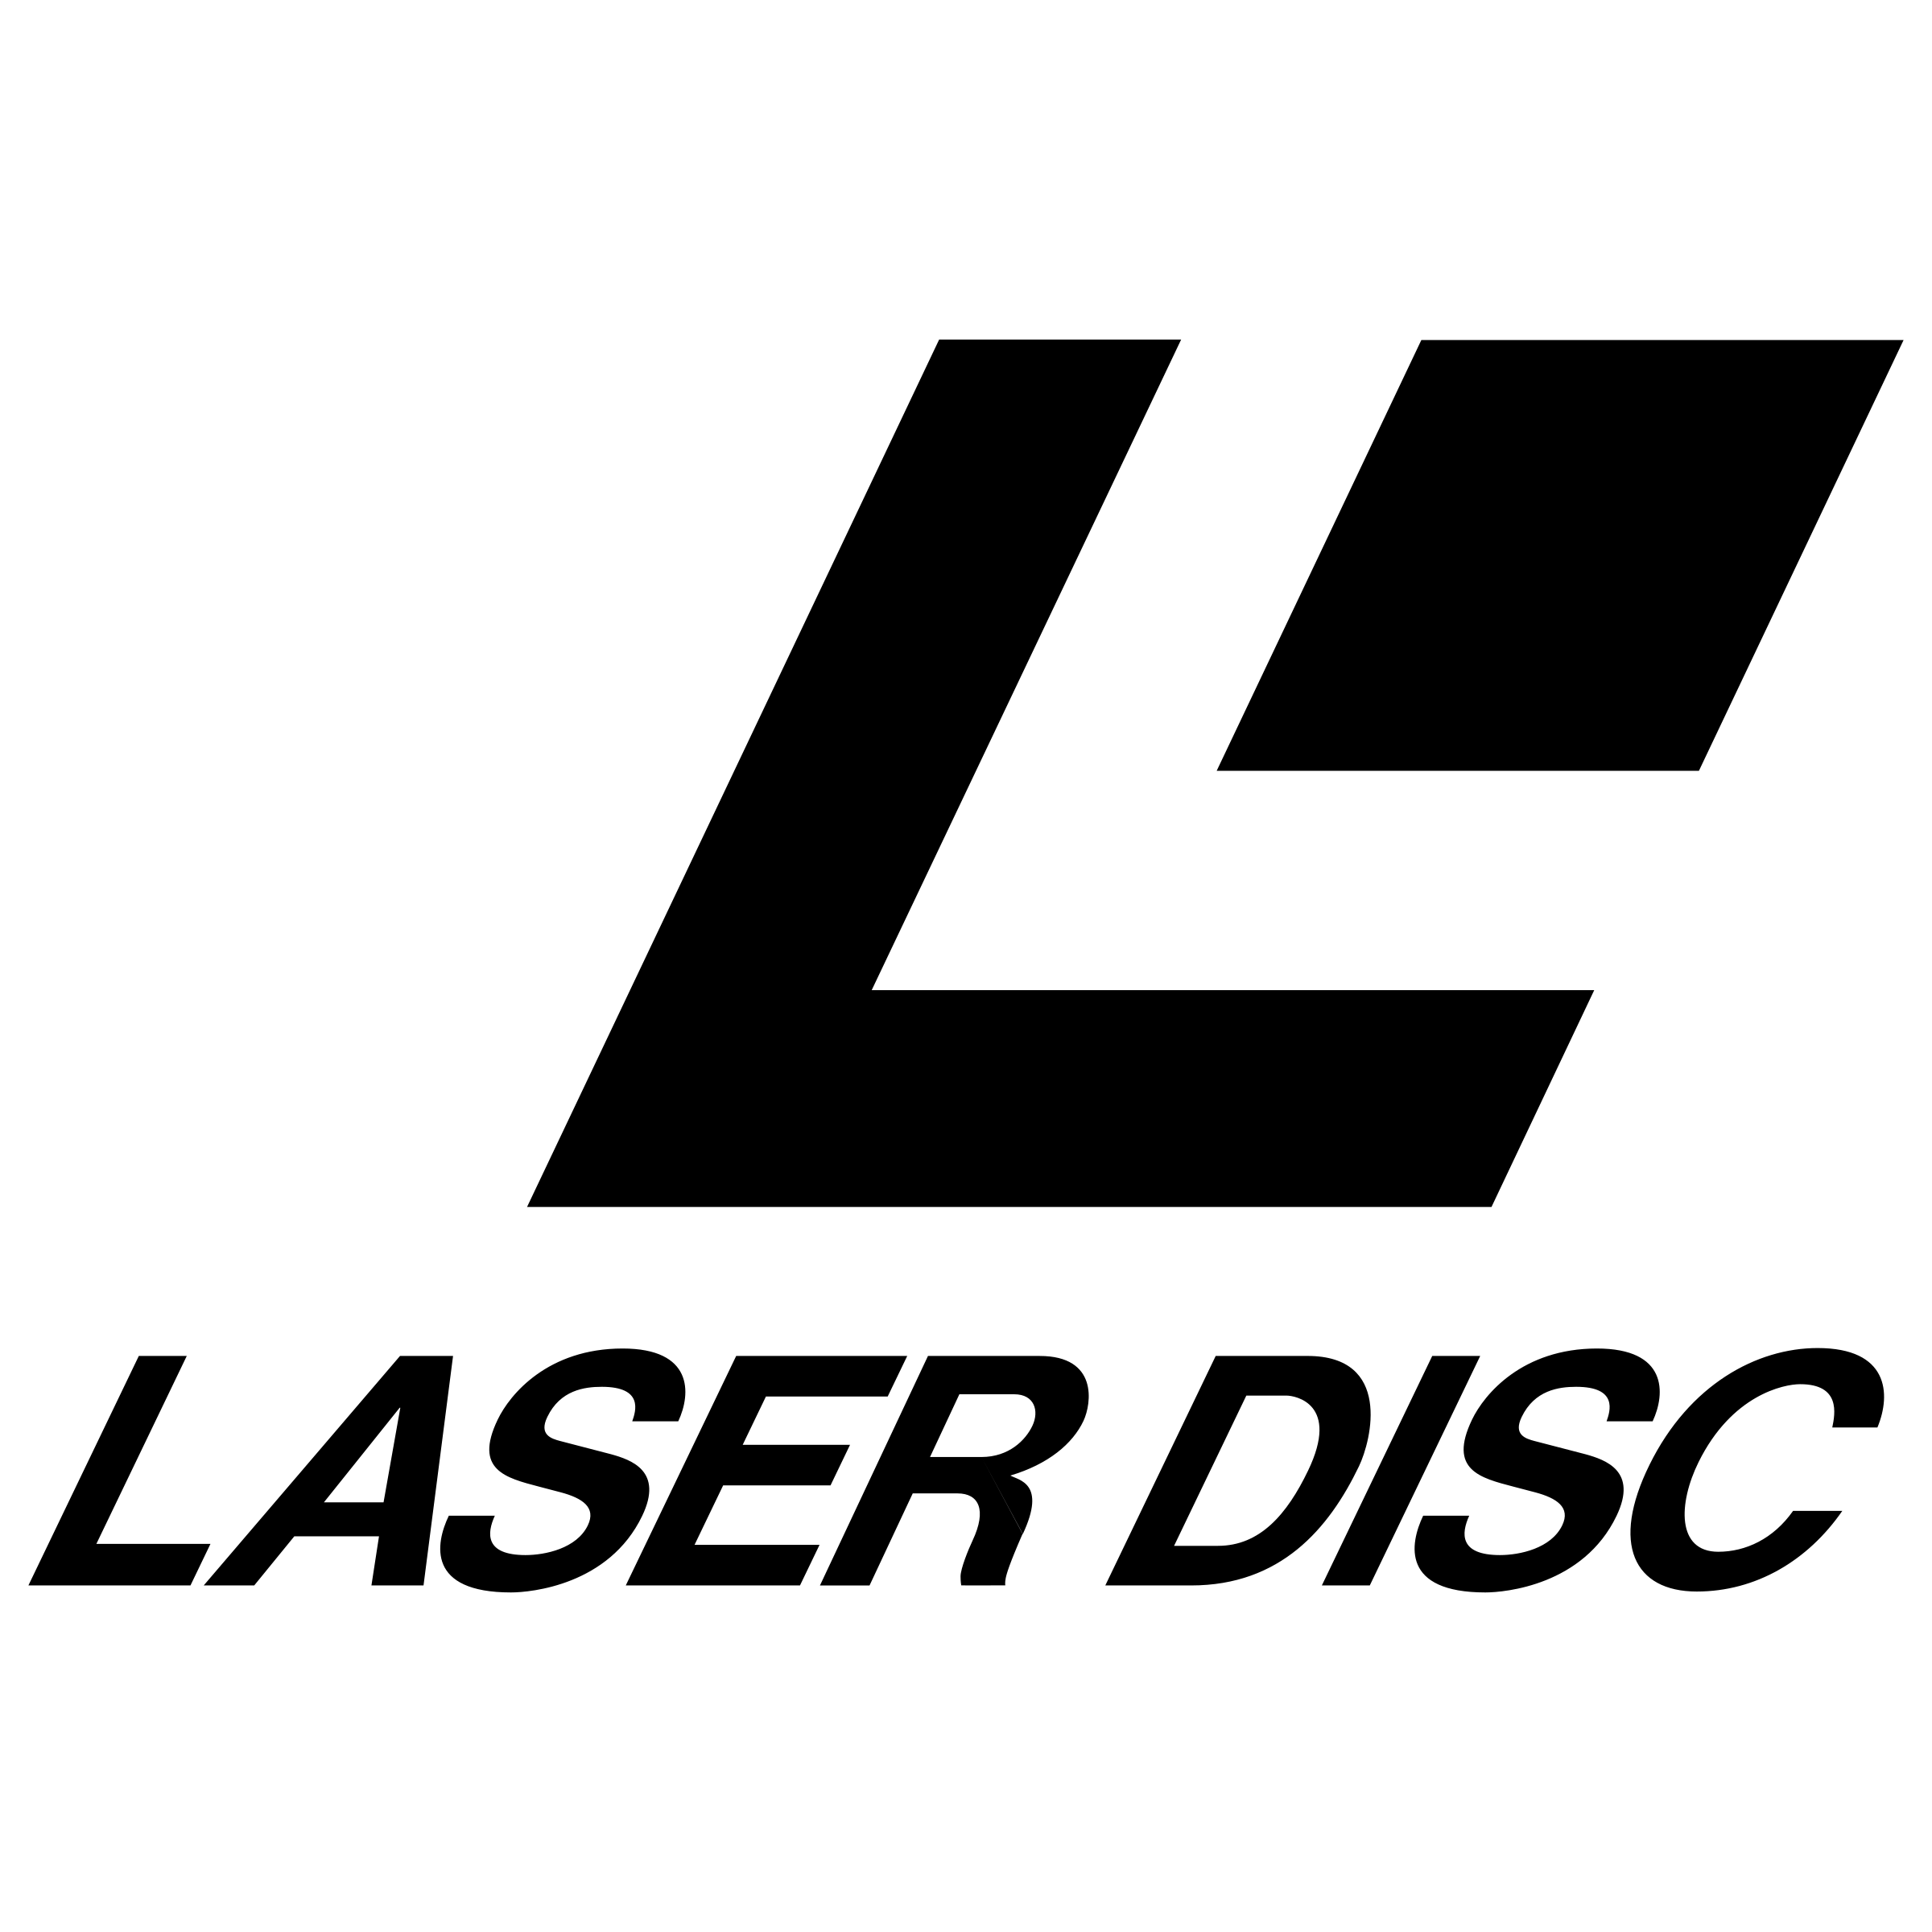 Laserdisc Logo - Laser Disc Logo PNG Transparent & SVG Vector - Freebie Supply